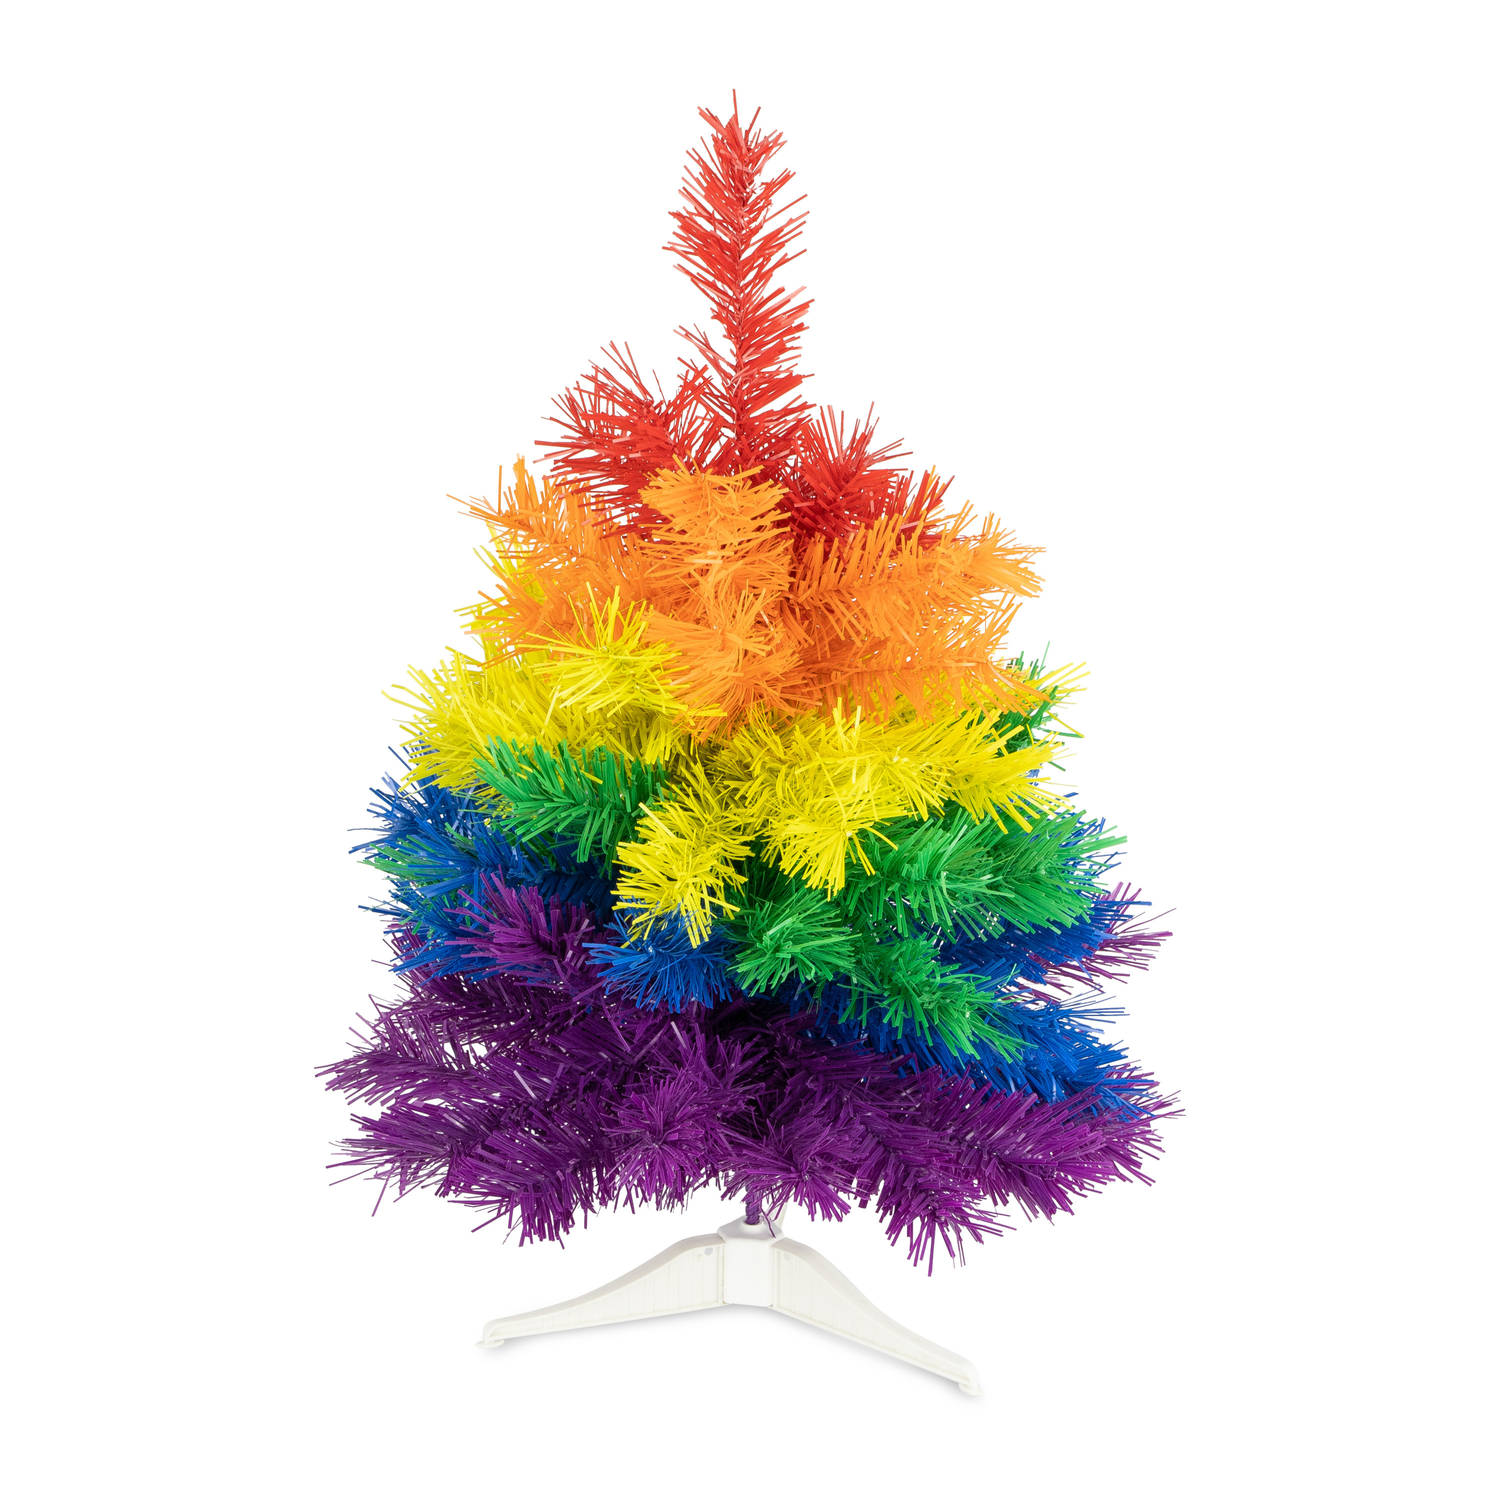 R en W kunst kerstboom klein regenboog kleuren H45 cmA?Æ?A¢a?¬A¡A?a??A?A - kunststof Kunstkerstboom